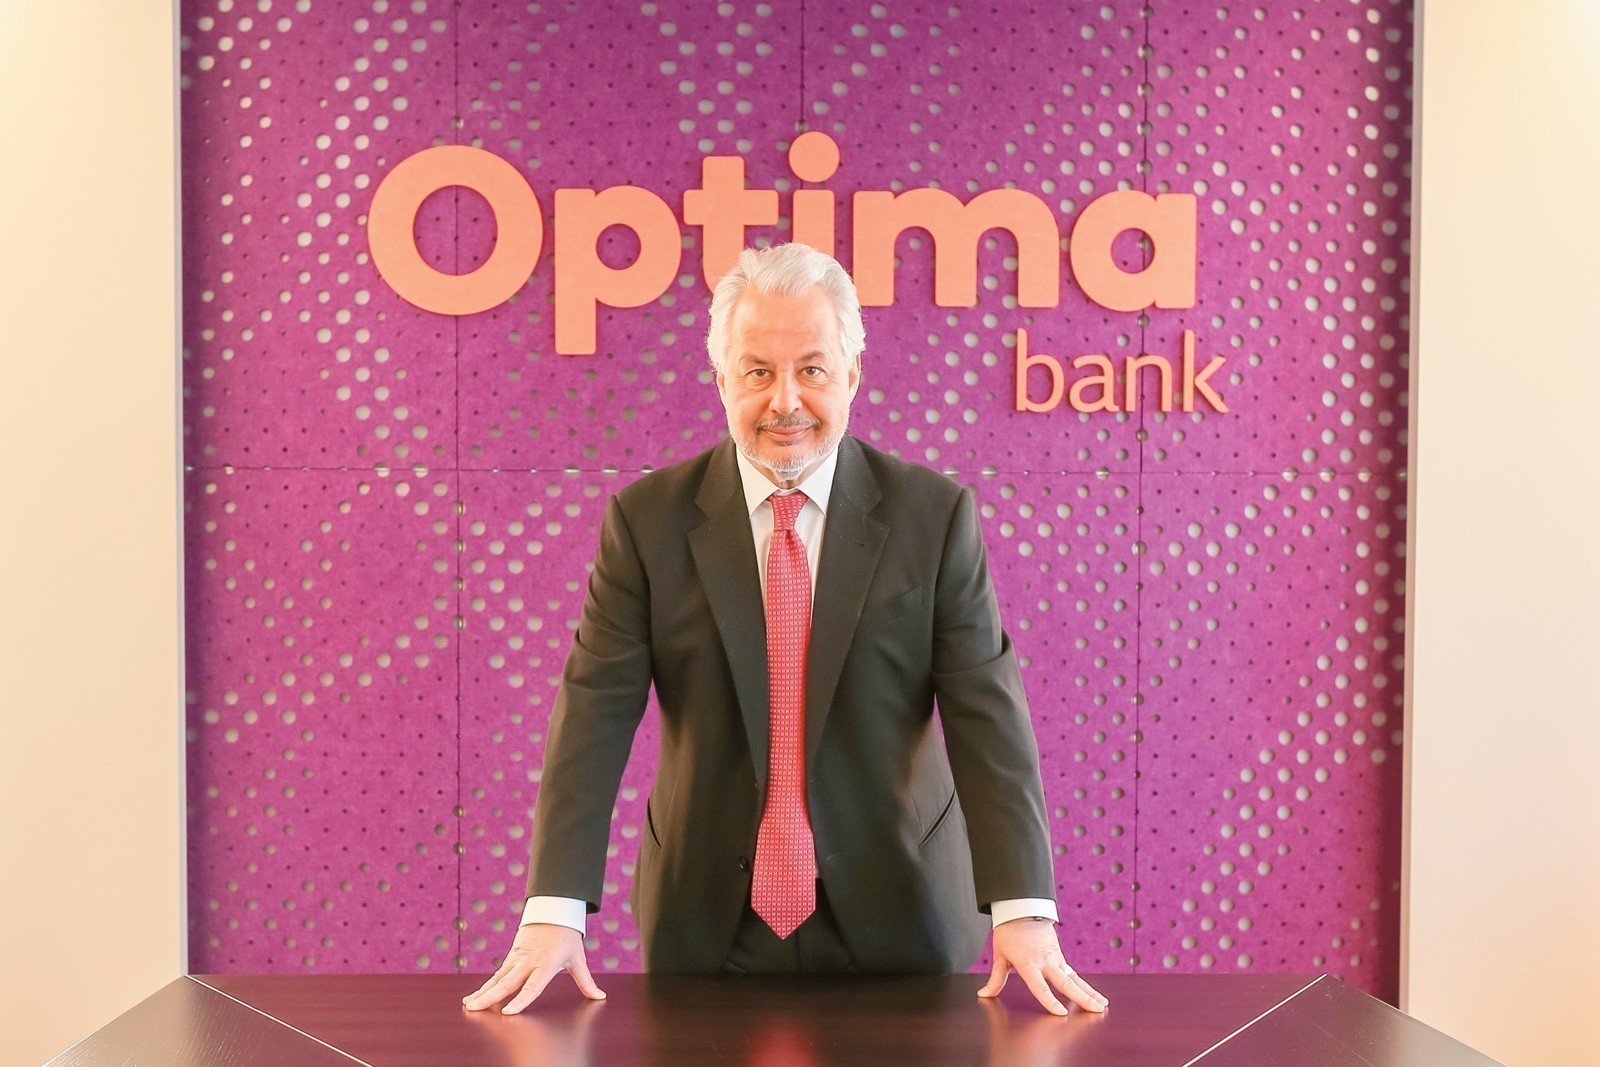 Γεώργιος Τανισκίδης: Oλοταχώς για το Χρηματιστήριο η Optima bank